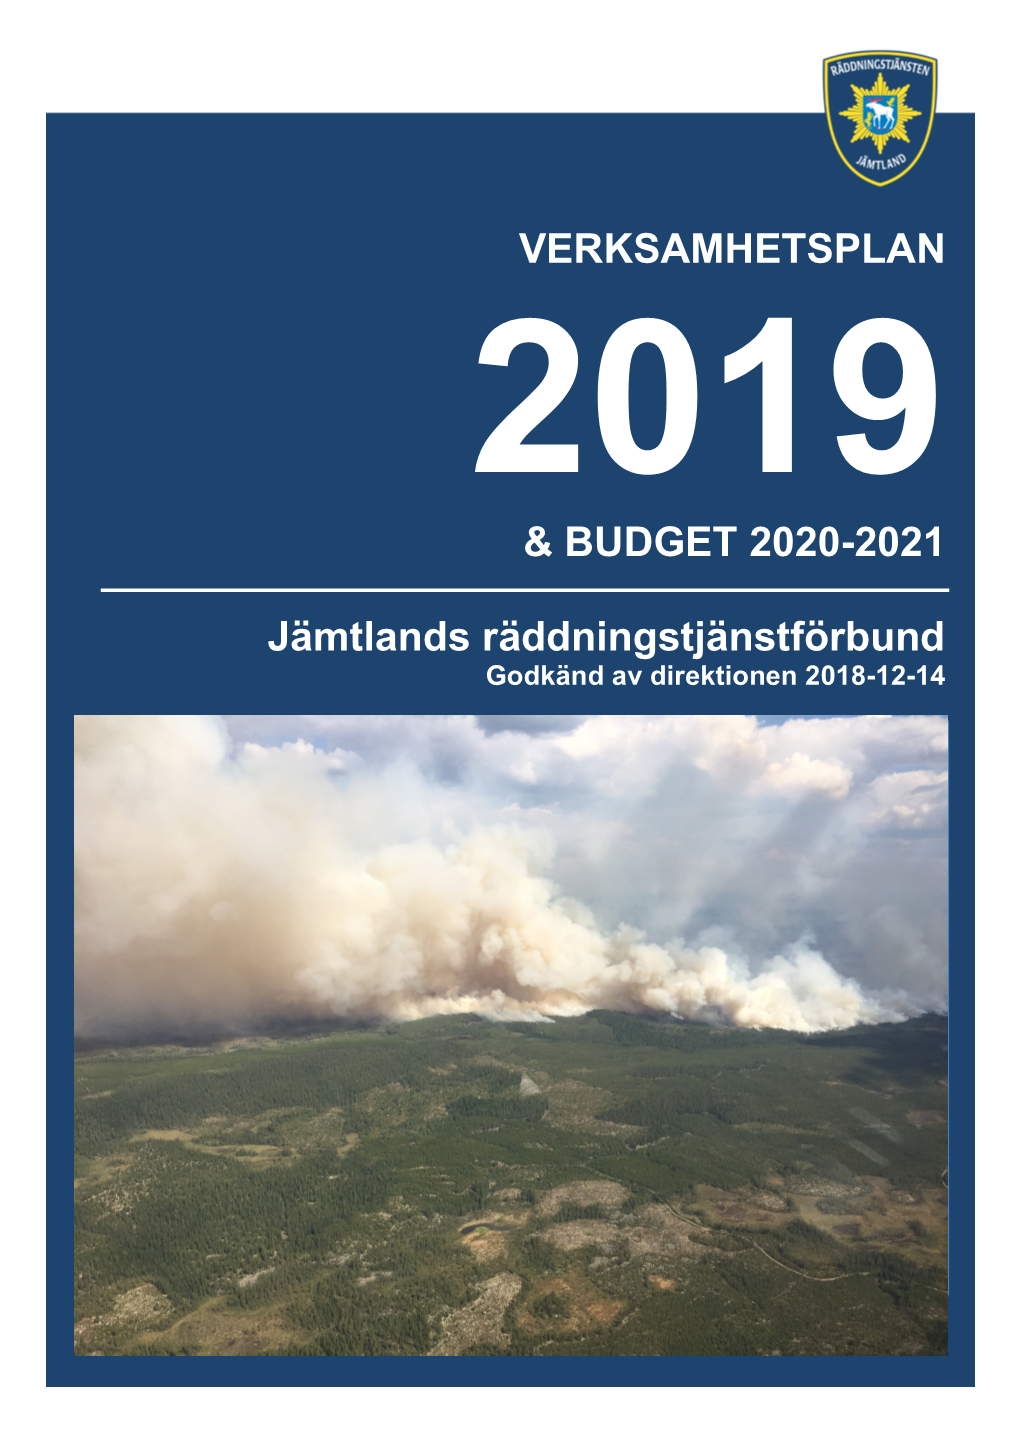 VERKSAMHETSPLAN & BUDGET 2020-2021 Jämtlands Räddningstjänstförbund